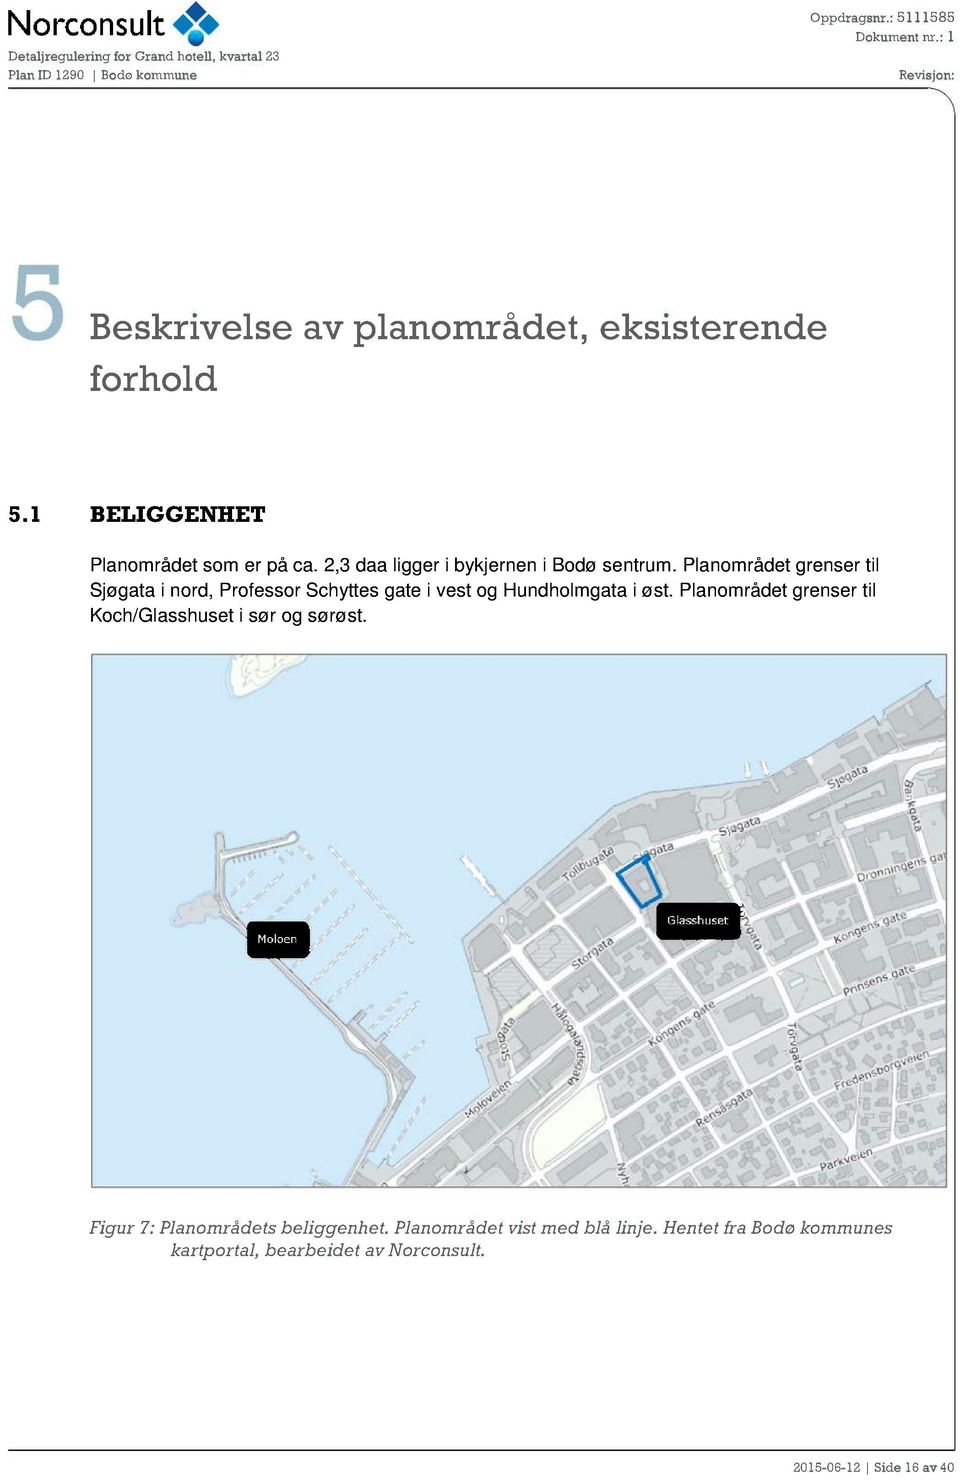 Planområdet grenser til Sjøgata i nord, Professor Schyttes gate i vest og H undholmgata i øst.